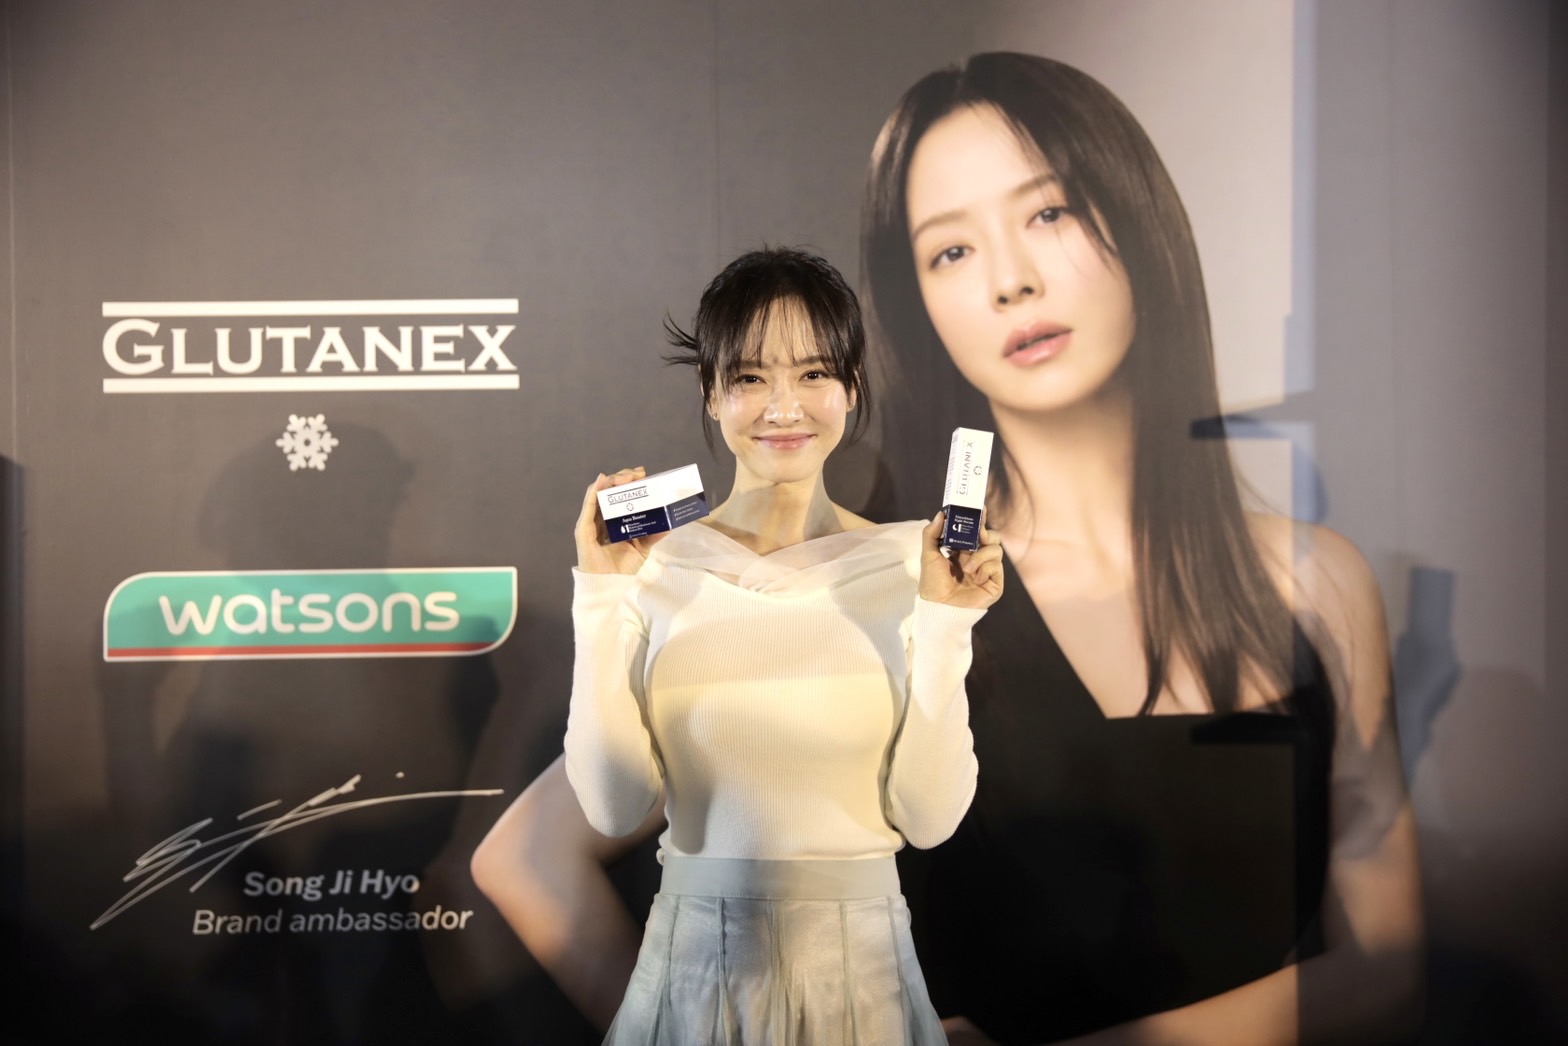 Glutanex แบรนด์ภายใต้ Nexus Pharma จัดงาน 'Glow With Jihyo' เผยความลับการดูแลผิวหน้าให้กระจ่างใส